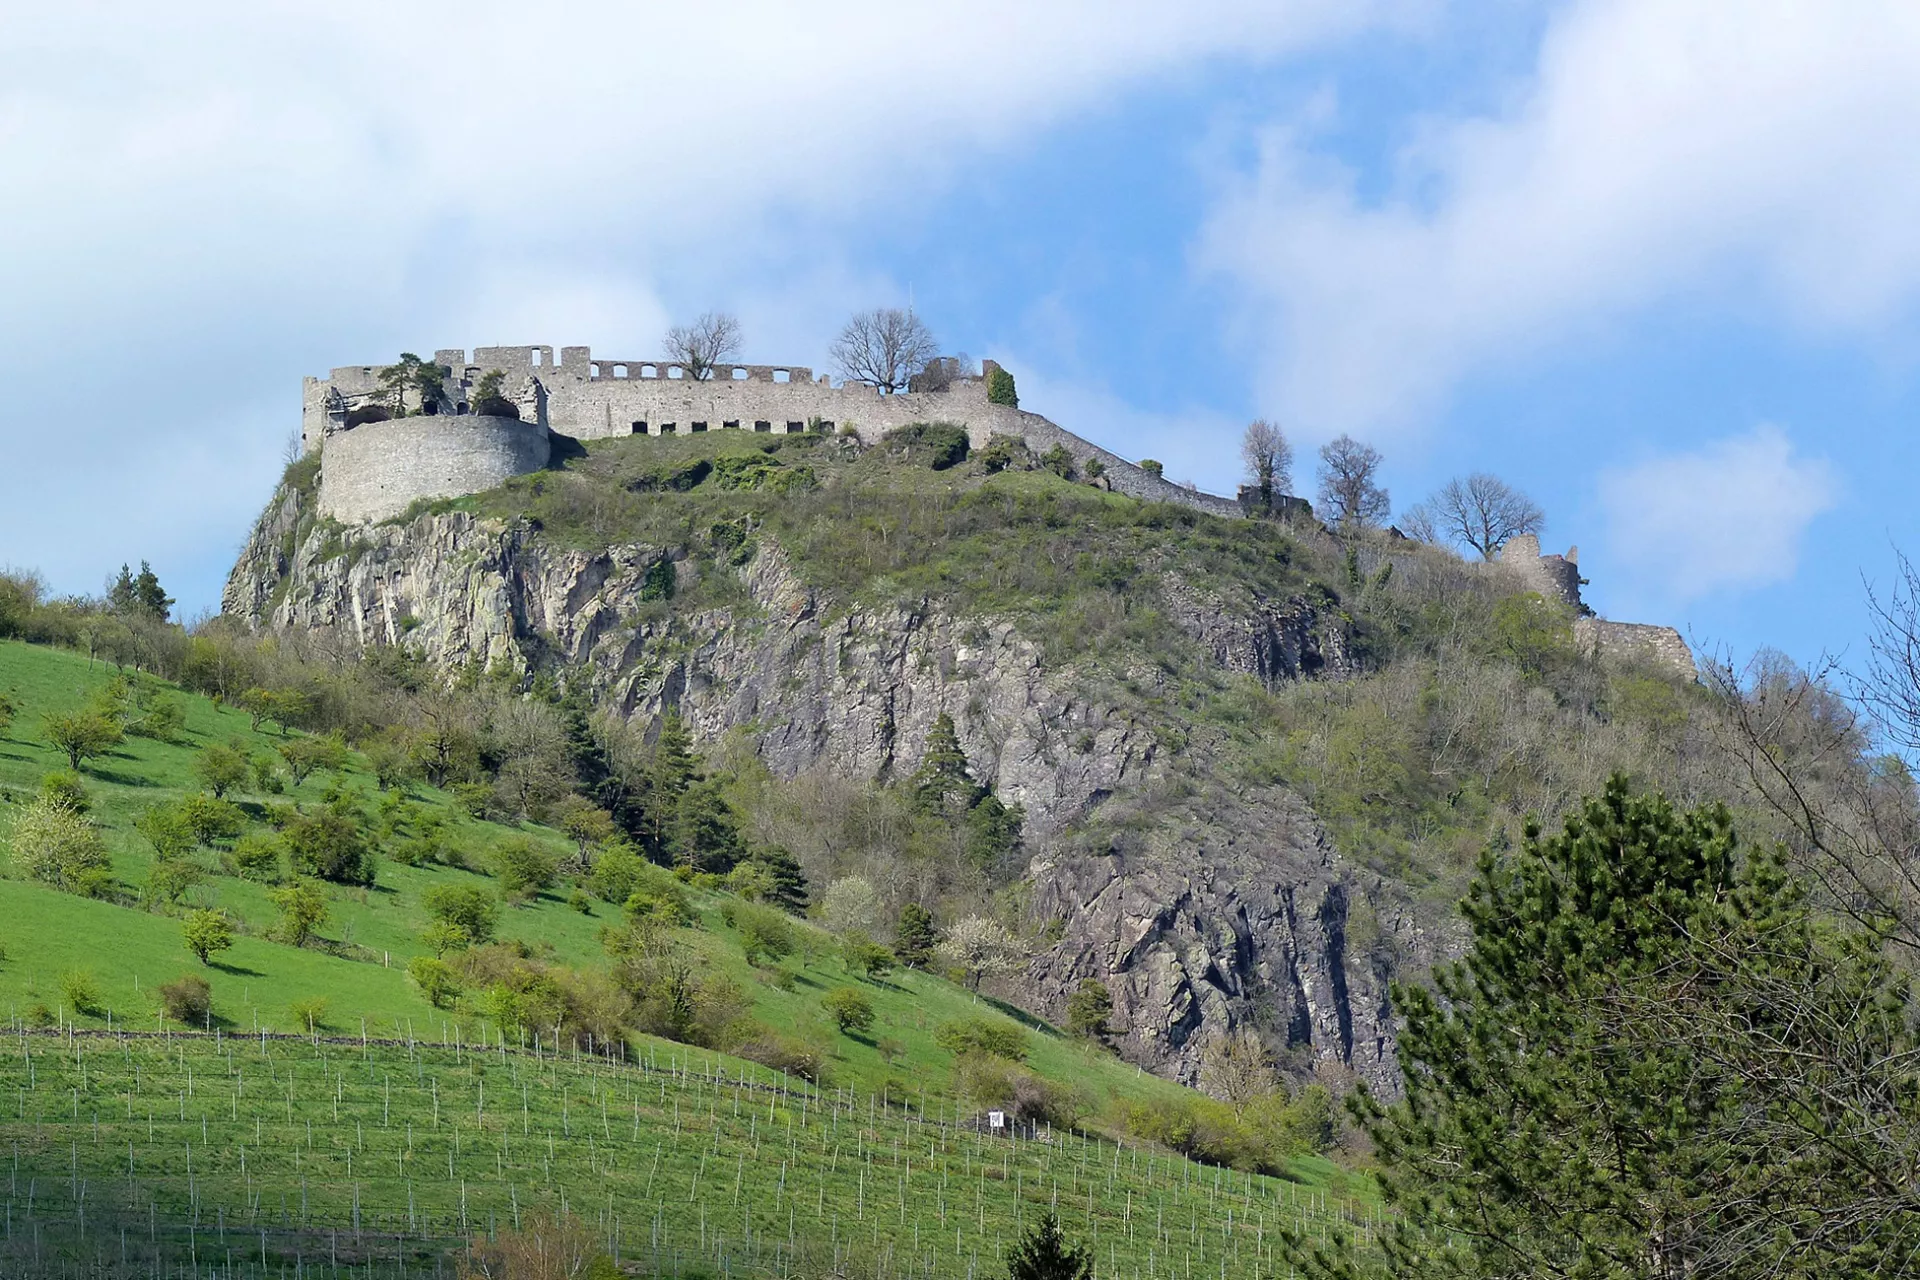 Hinter einem nach rechts abfallenden grünen Hügel, der teils mit Bäumen bestanden, teils mit Rebstöcken bepflanzt ist, erhebt sich rechts ein länglicher Felsenberg. Auf der flachen Kuppe des Berges erstreckt sich eine Burgruine.